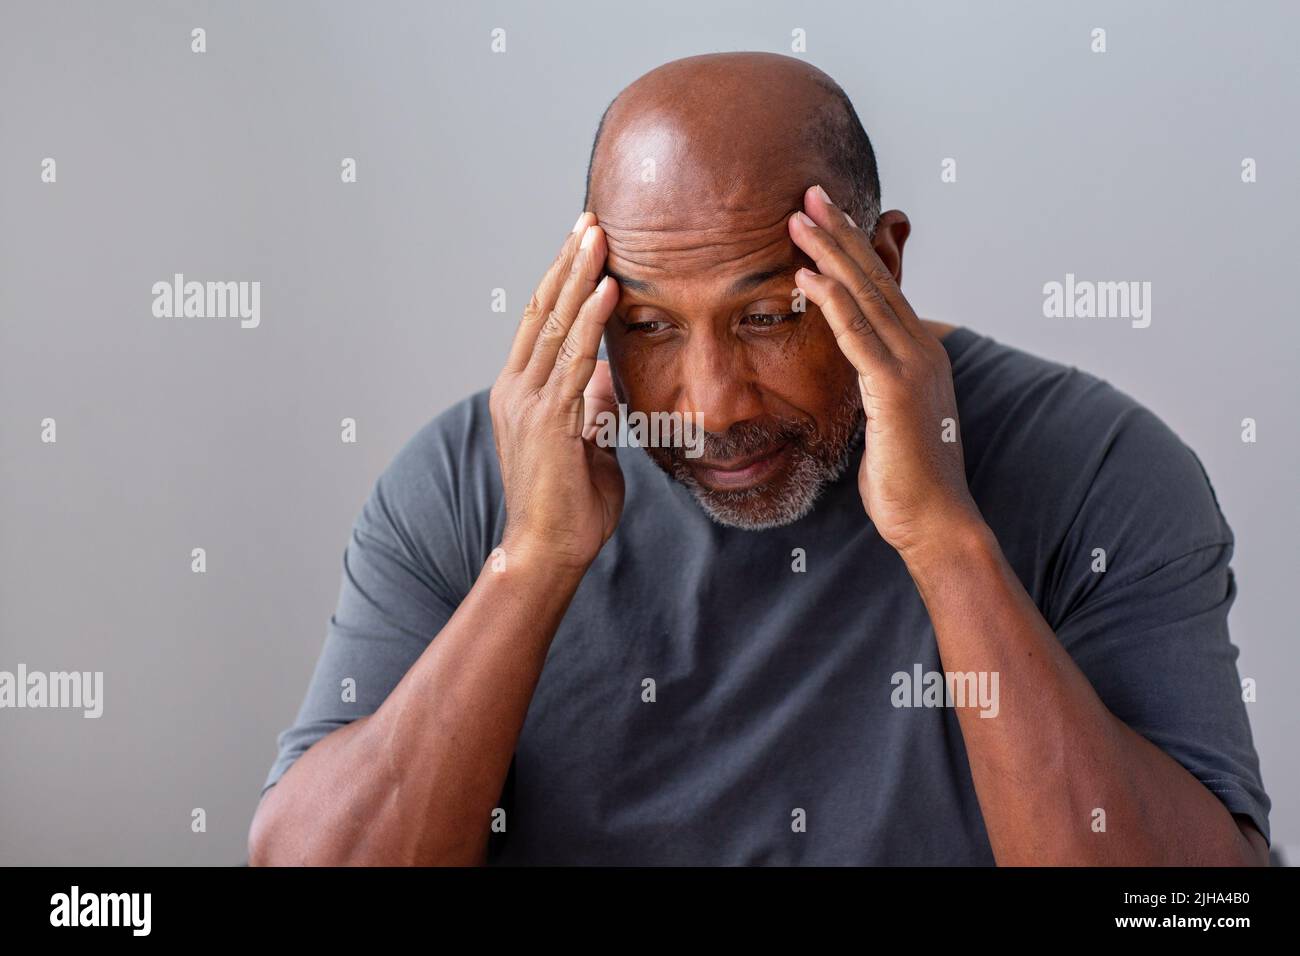 El hombre africano americano maduro no se siente bien con sus manos en su cabeza. Foto de stock